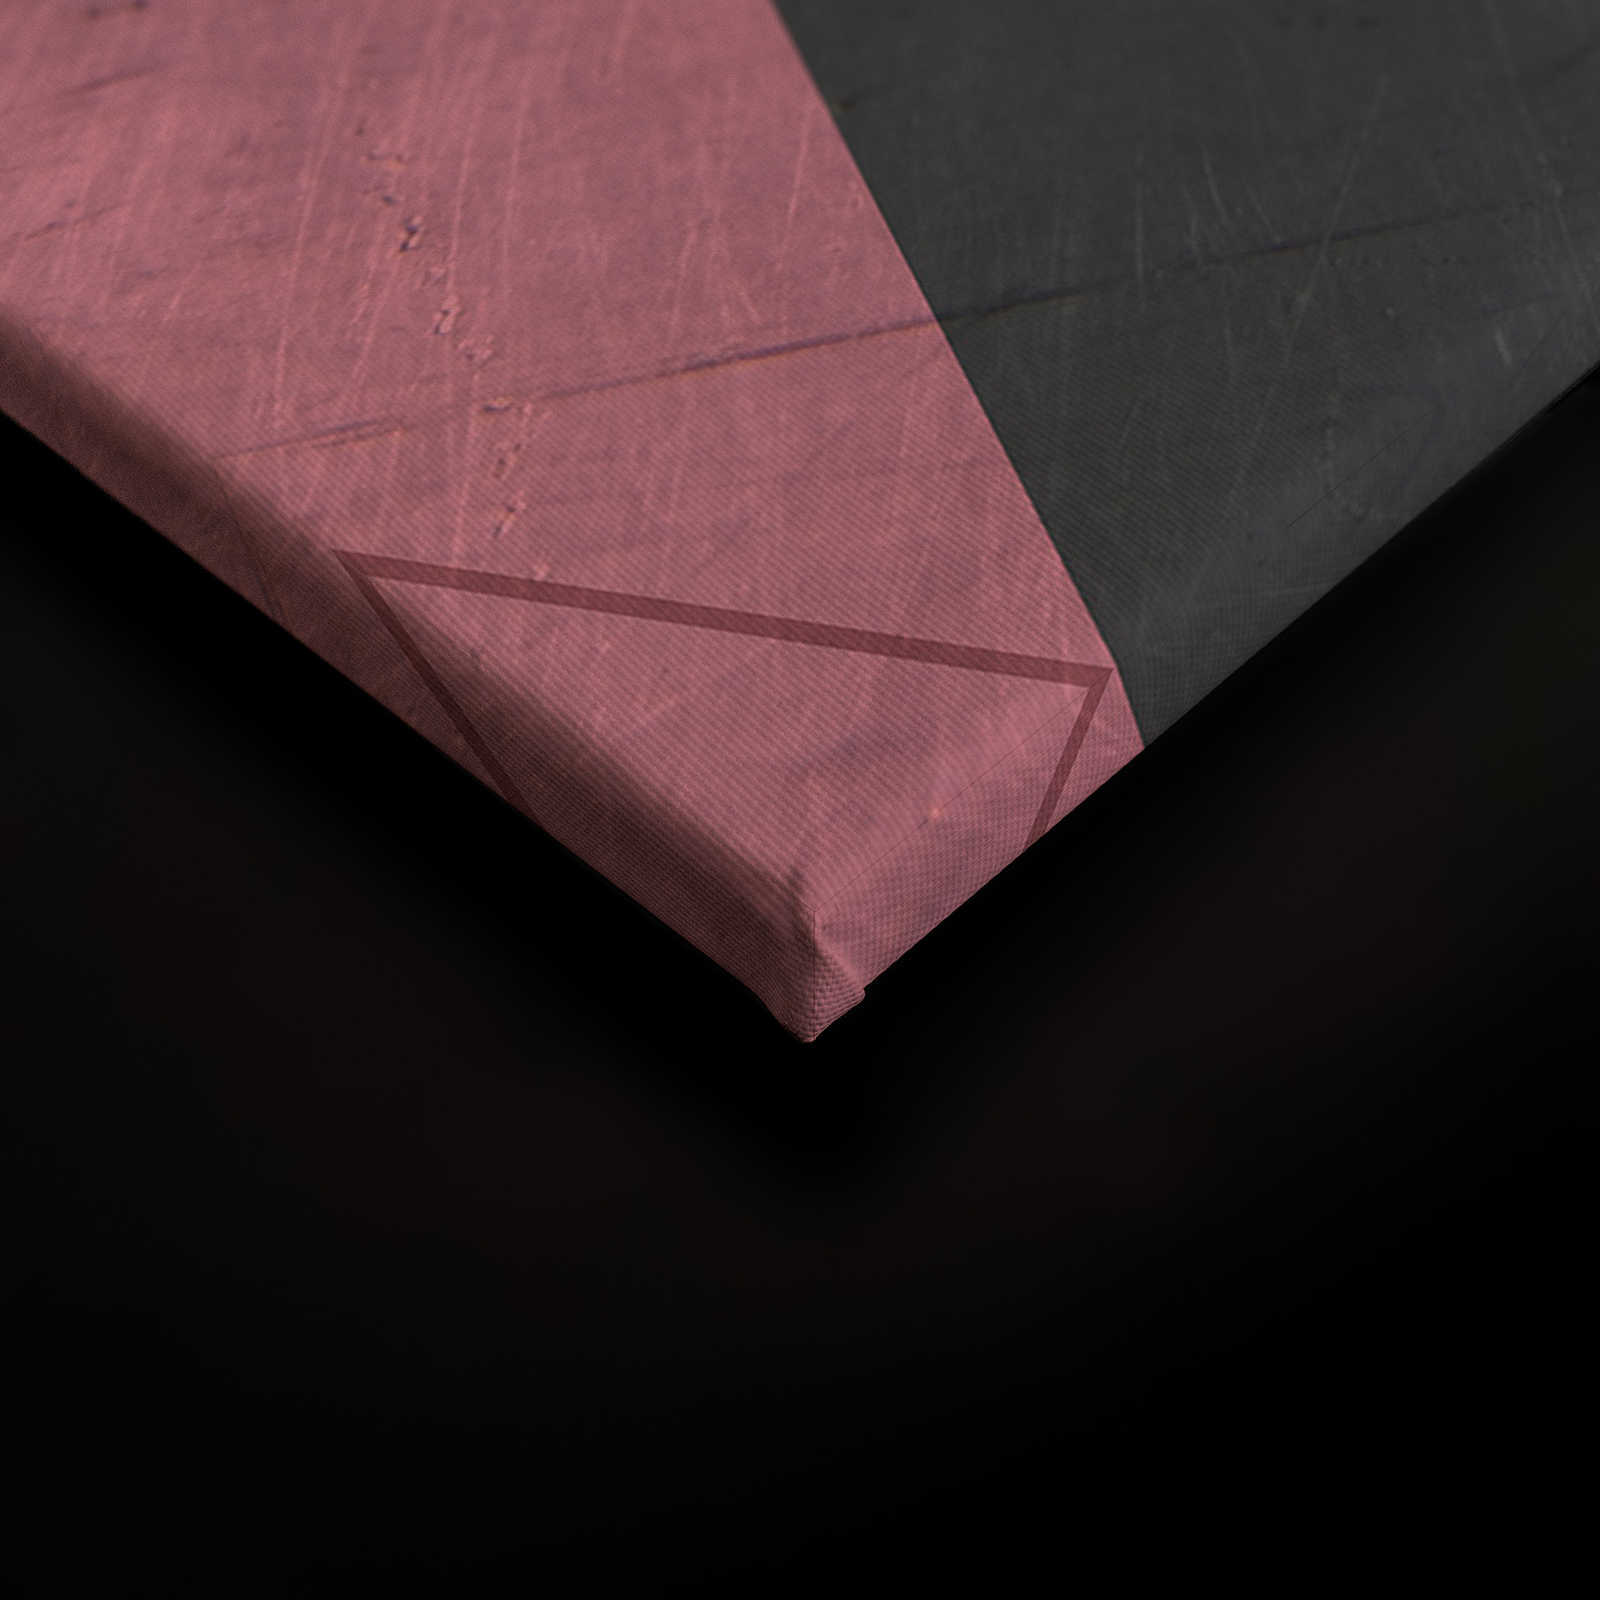             Quadro su tela con piastrelle esagonali dall'aspetto vintage - 0,90 m x 0,60 m
        